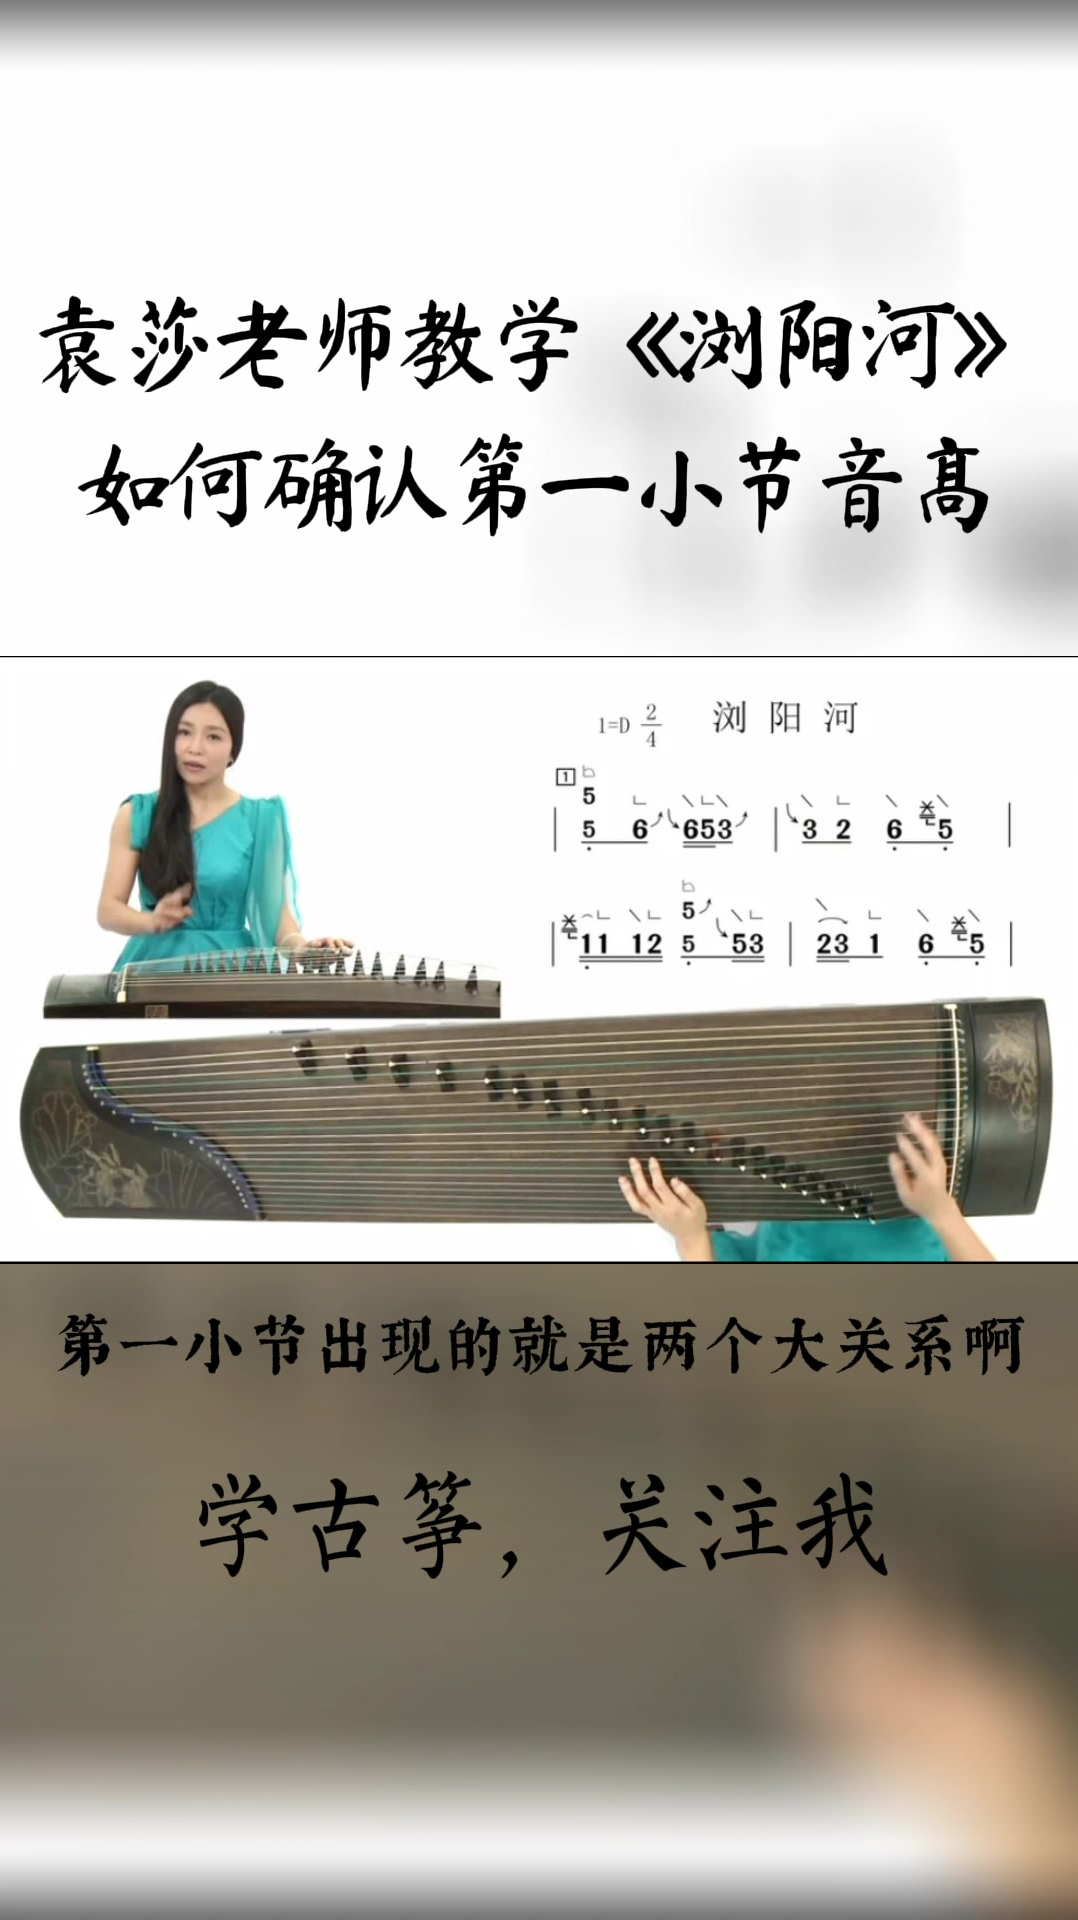 袁莎老师教你古筝曲浏阳河如何确认第一小节的音高